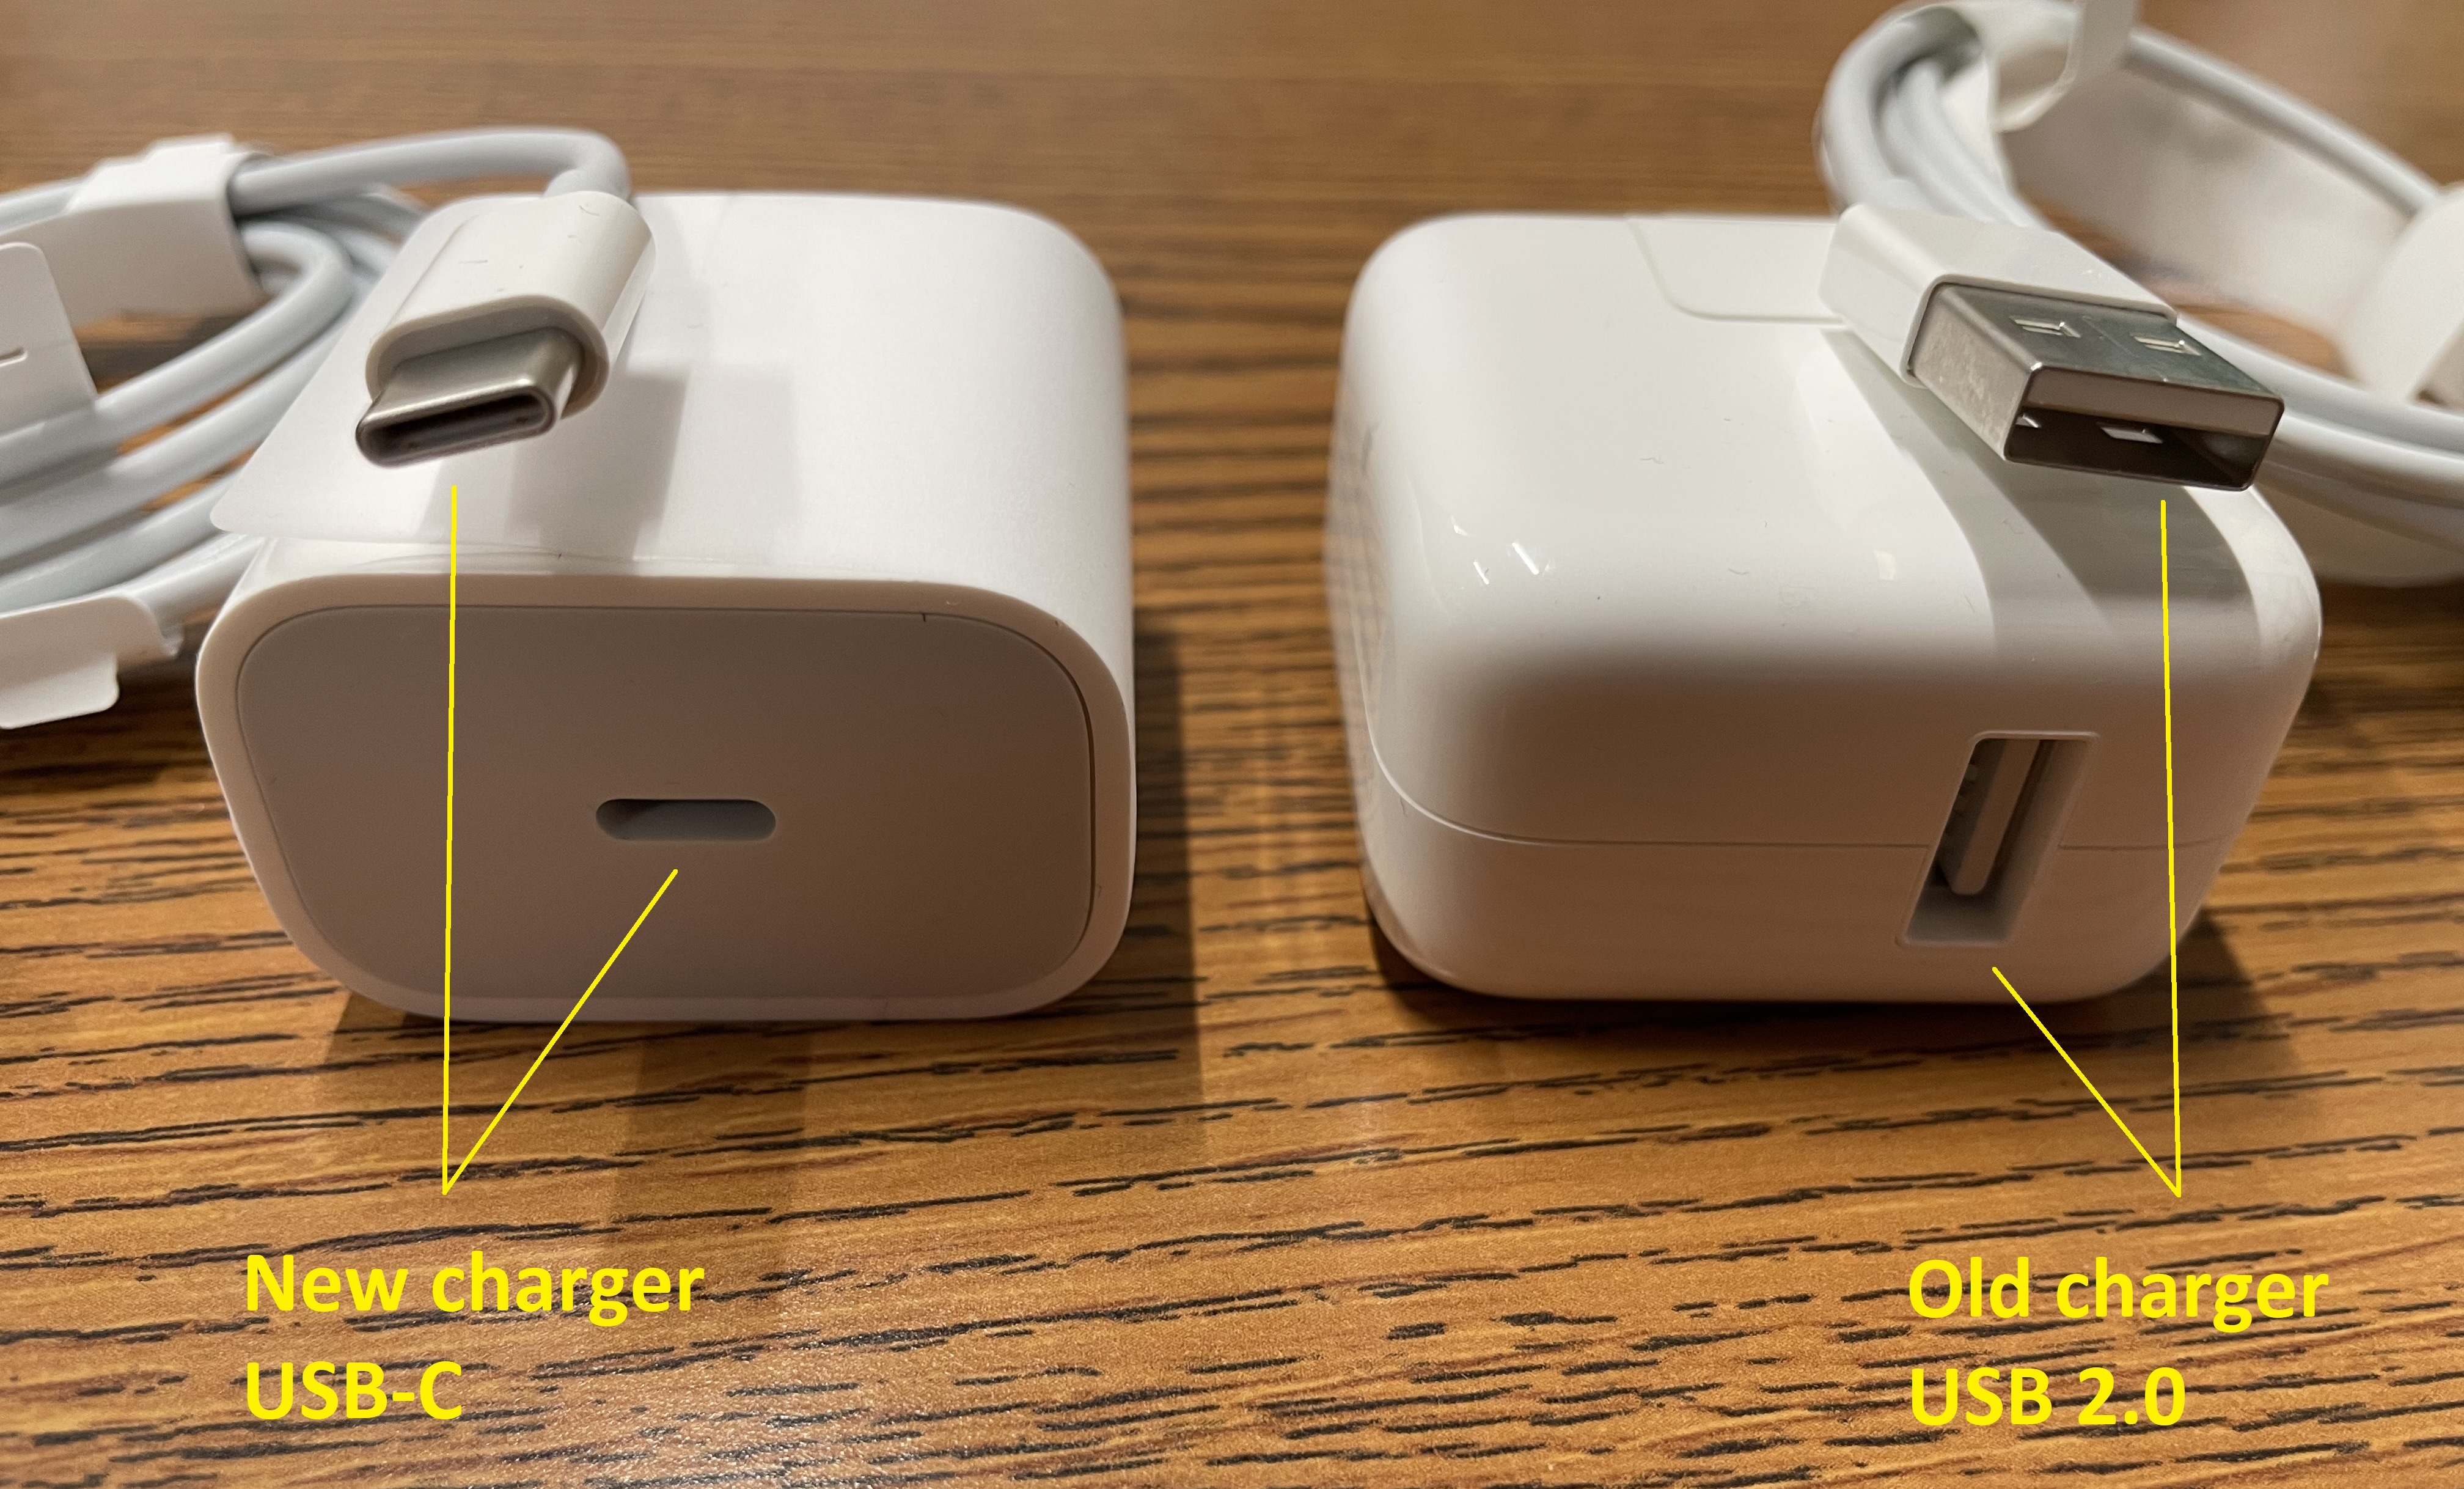 USB-C vs USB 2.0 charging brick